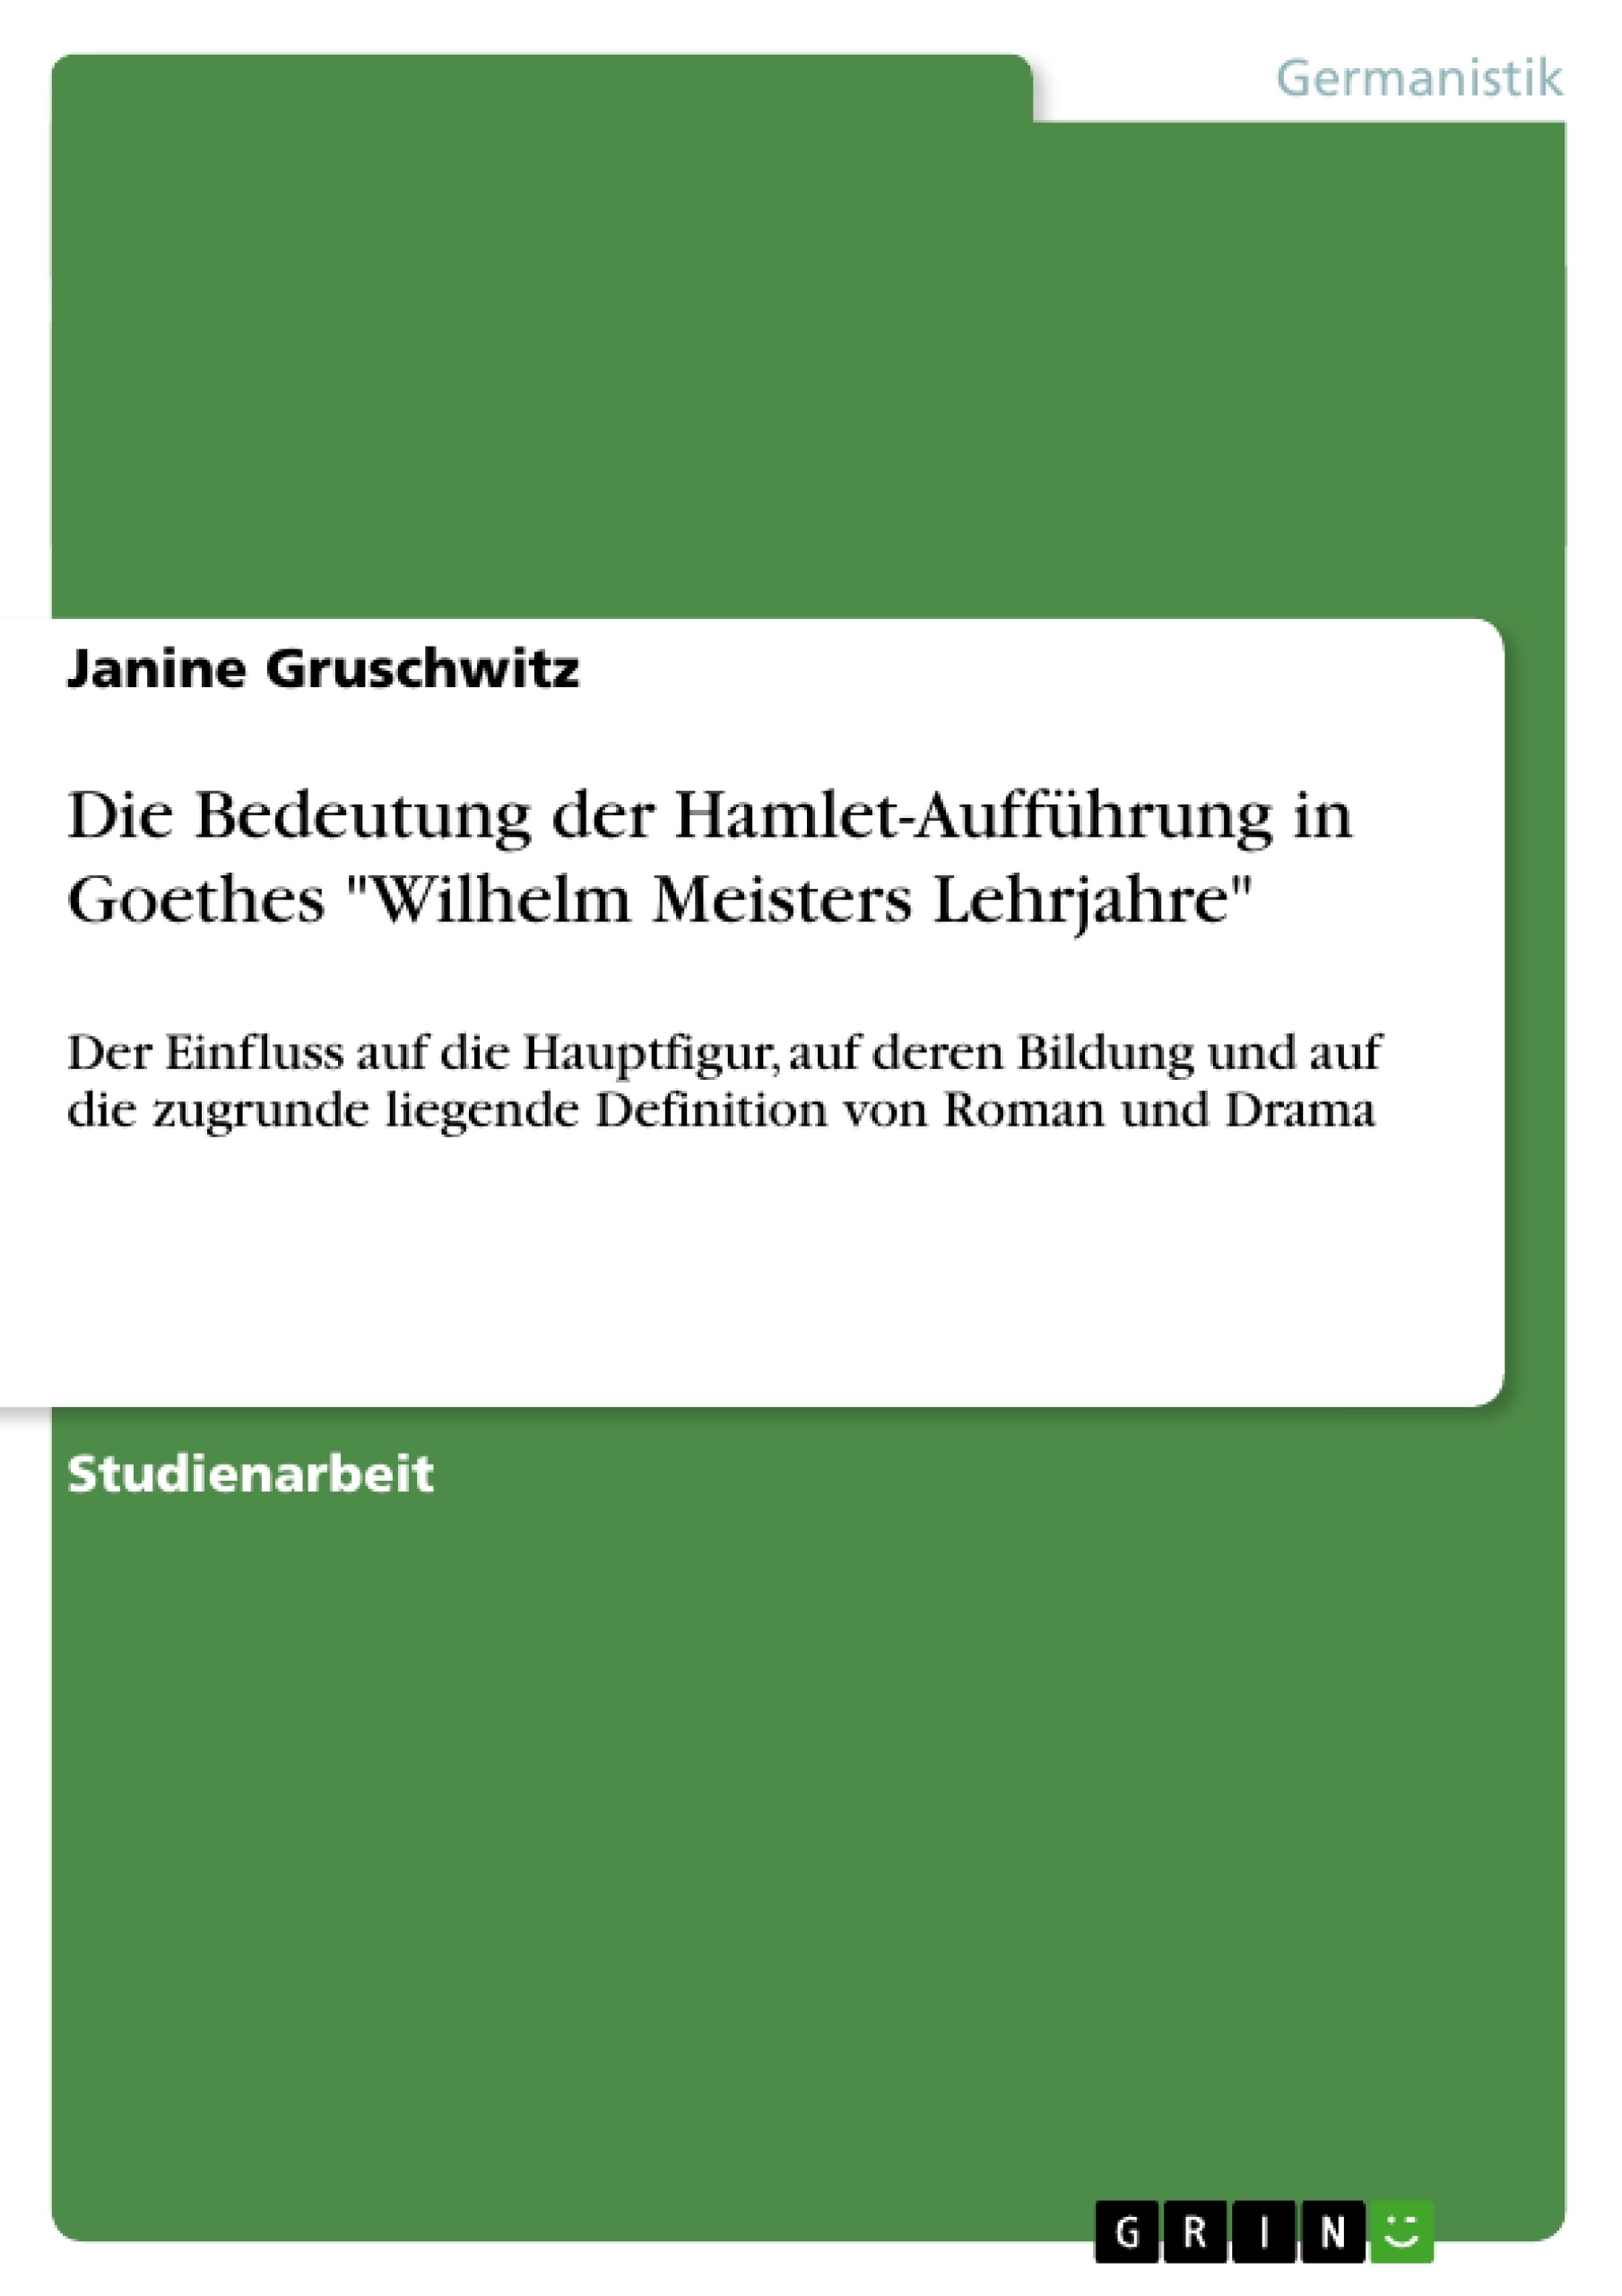 Titel: Die Bedeutung der Hamlet-Aufführung in Goethes "Wilhelm Meisters Lehrjahre"